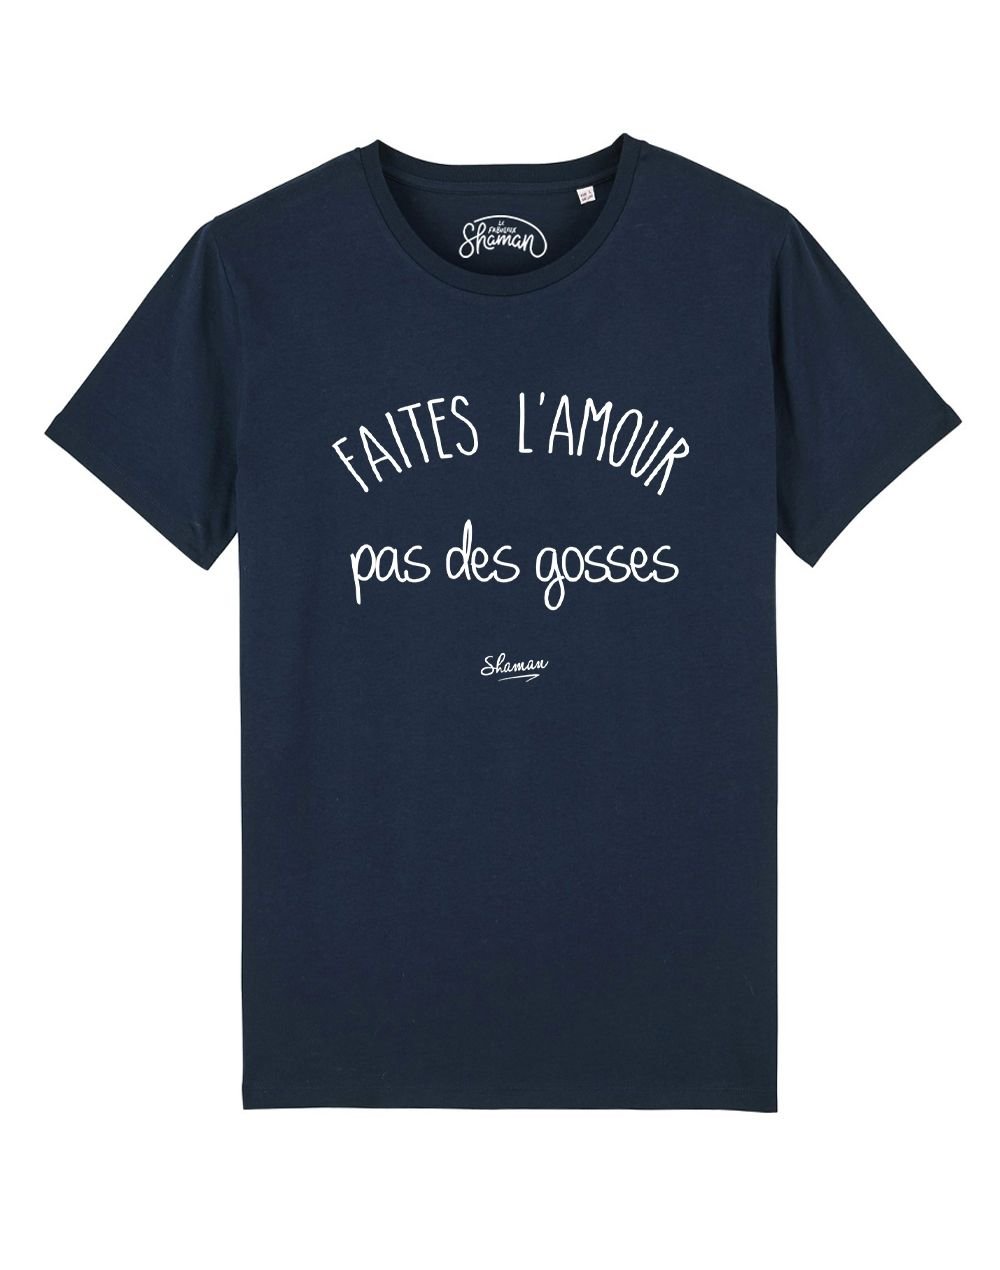 Tee-shirt "Faites l'amour pas des gosses"